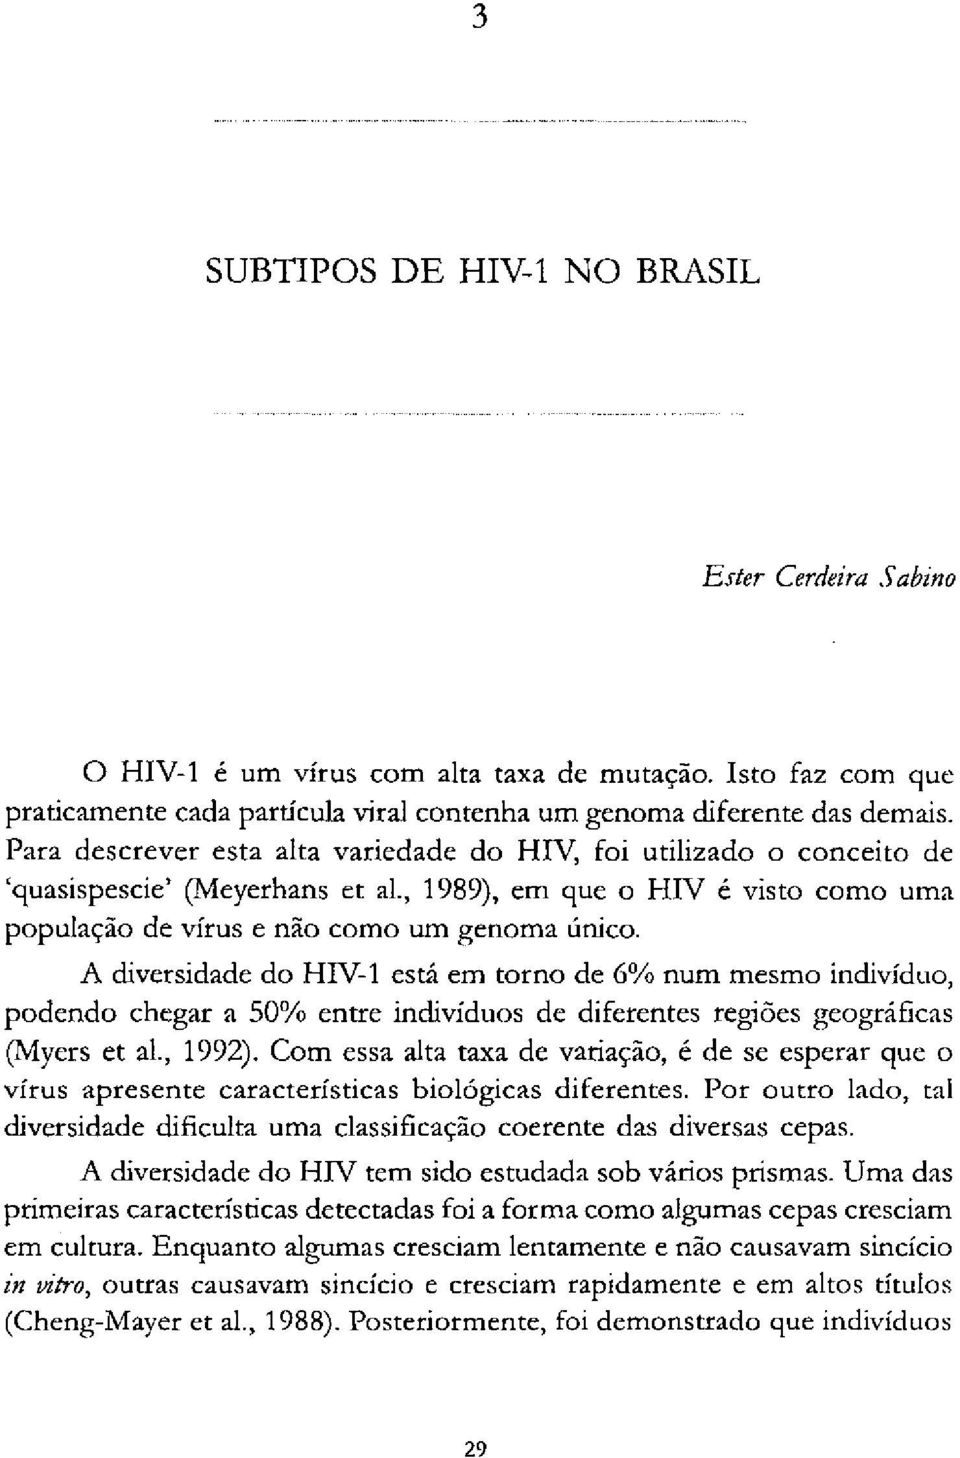 A diversidade do HIV-1 está em torno de 6% num mesmo indivíduo, podendo chegar a 50% entre indivíduos de diferentes regiões geográficas (Myers et al., 1992).